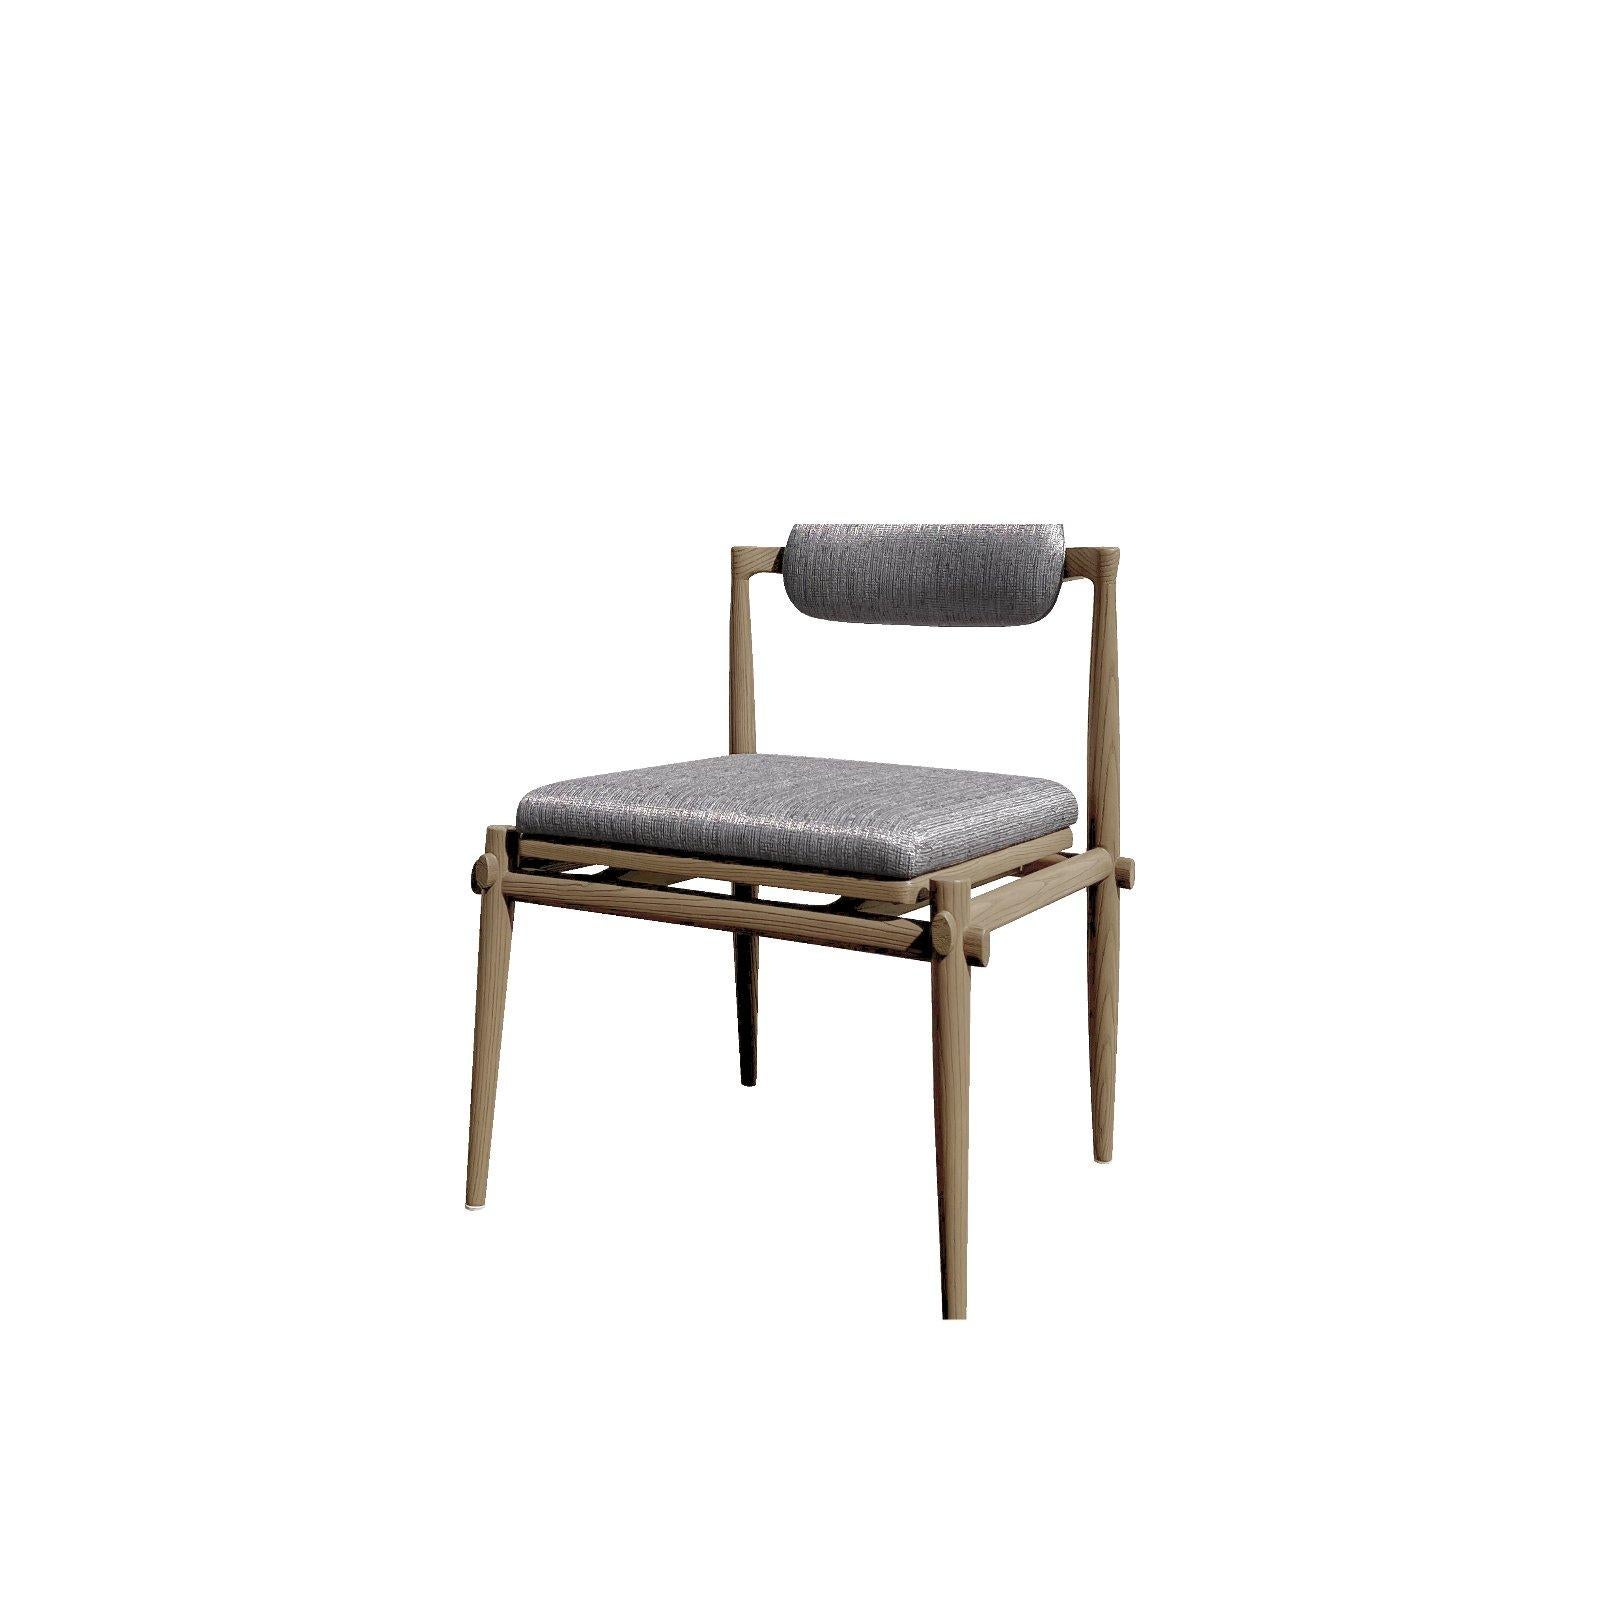 Description : Interlock Chair Armless - notre chaise de salle à manger emblématique, avec un clin d'œil aux meubles traditionnels en bois emboîtés. Fabriquée en chêne massif, la chaise est ornée de détails complexes et de profils très